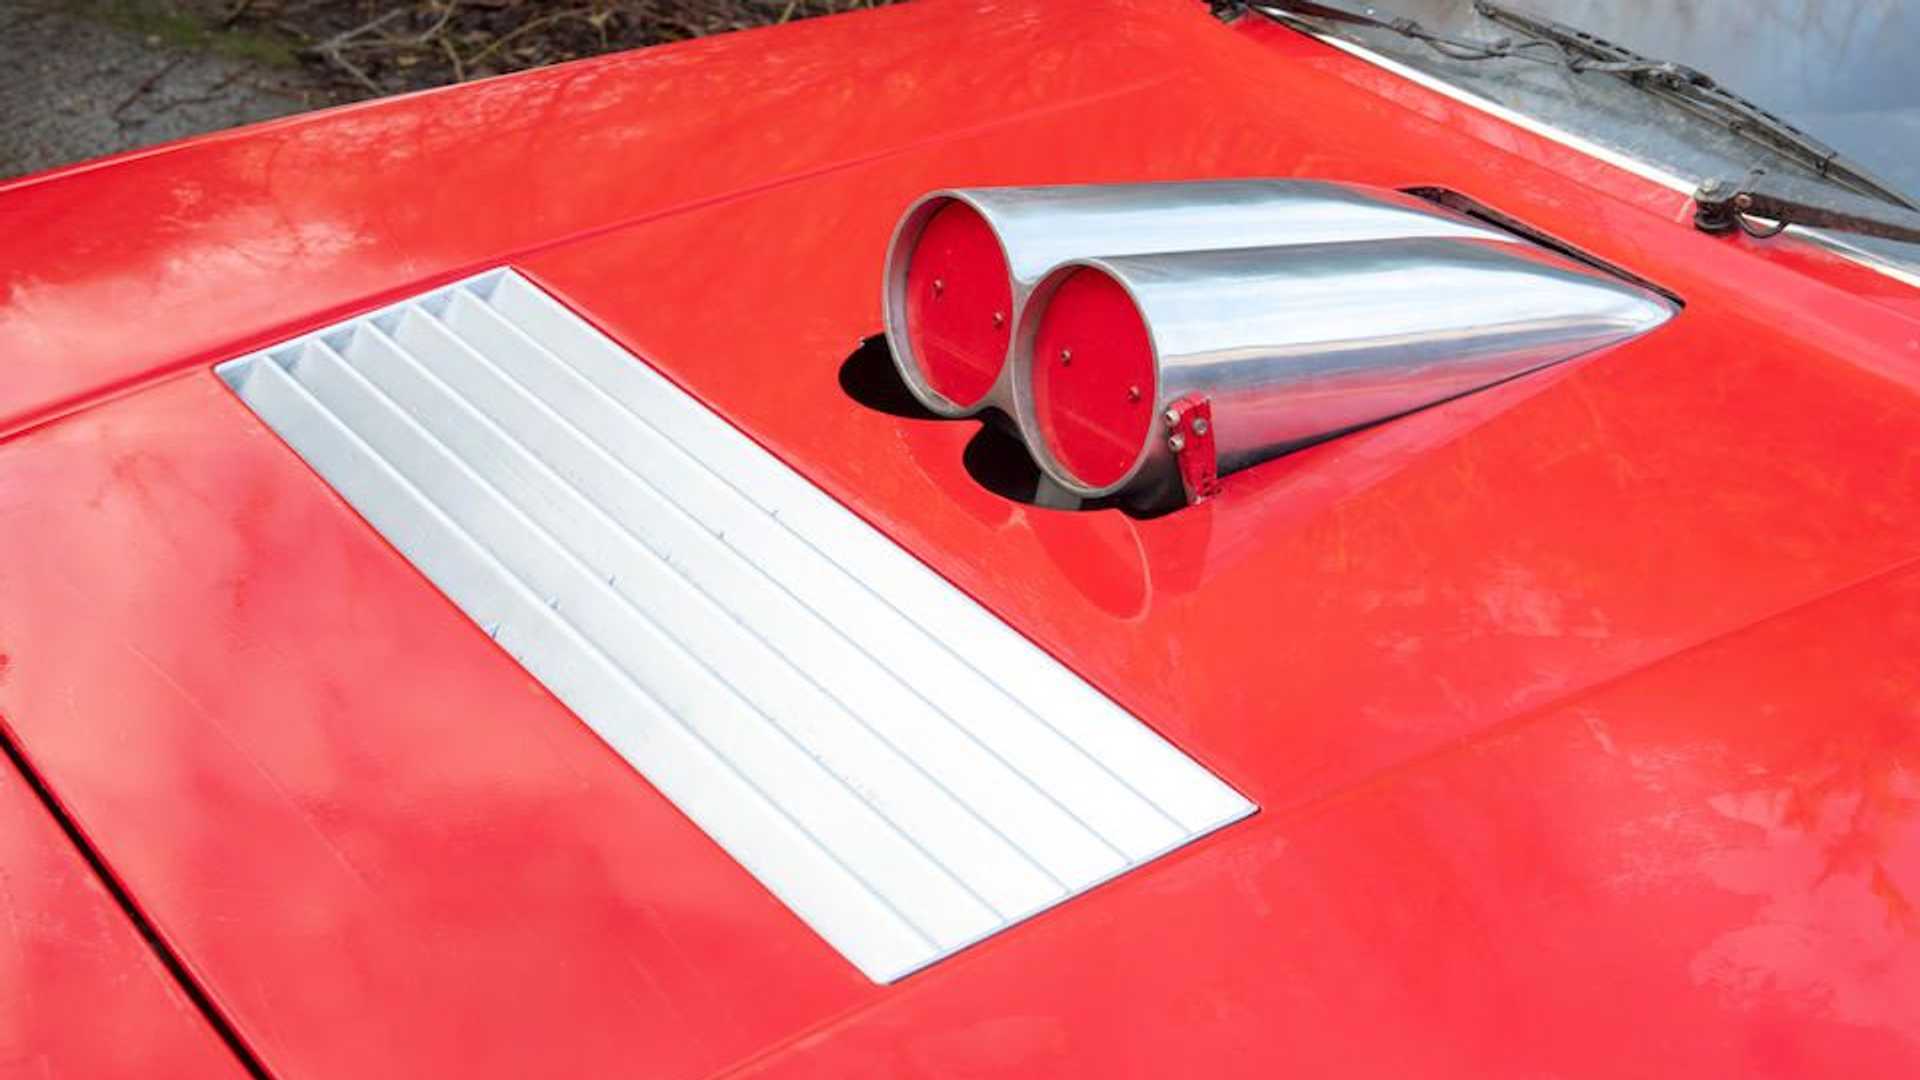 نمای کاپوت وانت پیکاپ فراری اف 412 / Ferrari F412 pickup truck قرمز رنگ